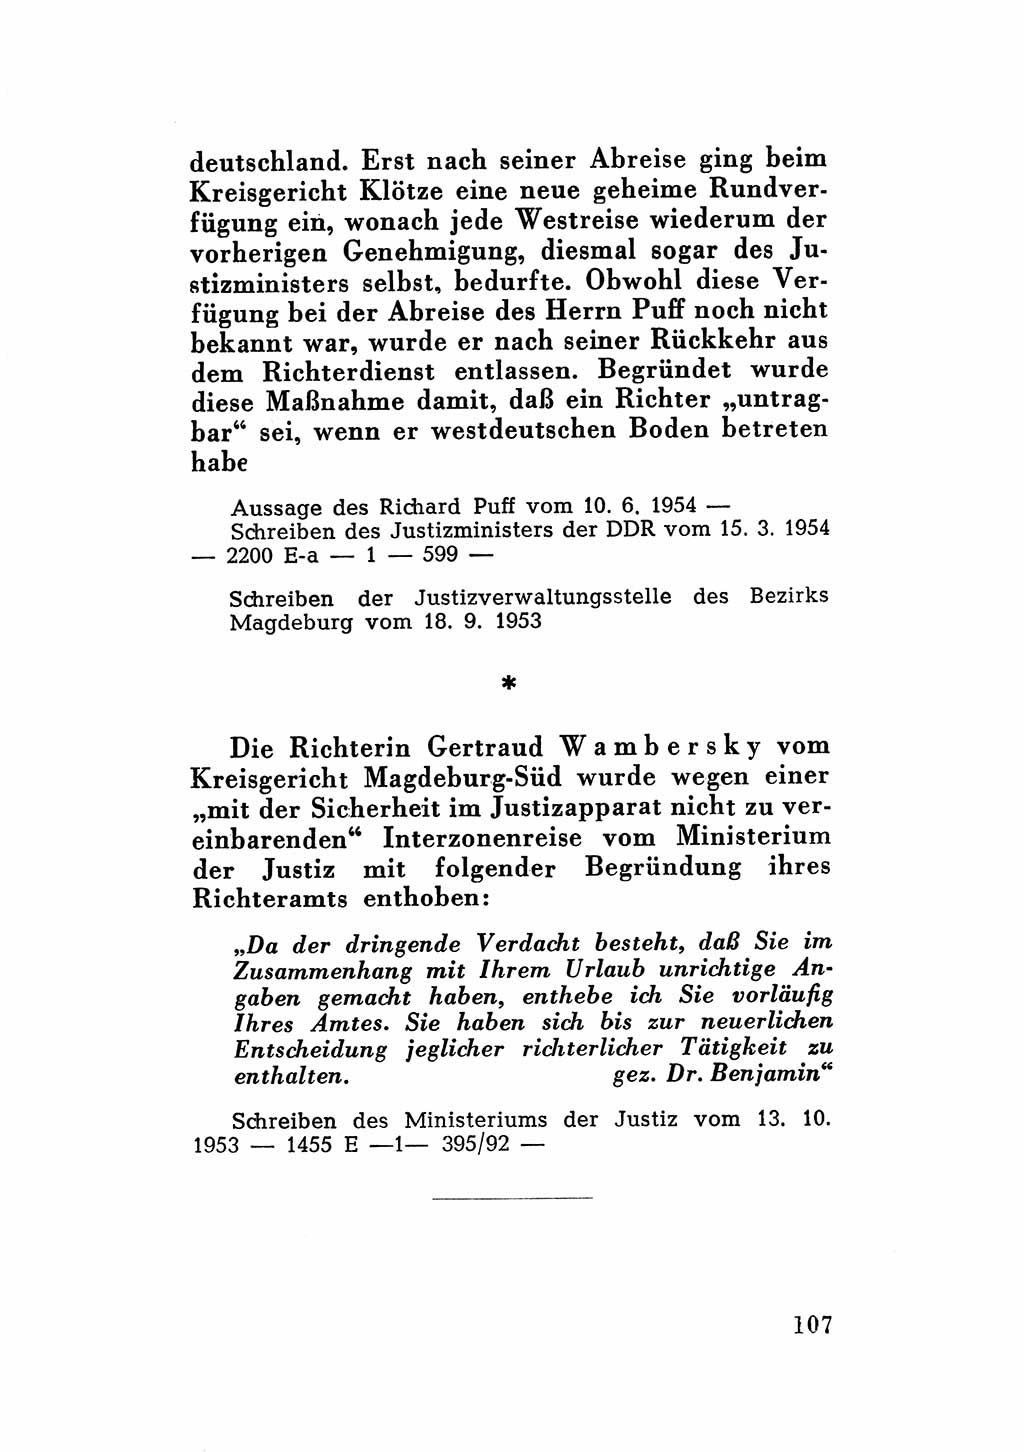 Katalog des Unrechts, Untersuchungsausschuß Freiheitlicher Juristen (UfJ) [Bundesrepublik Deutschland (BRD)] 1956, Seite 107 (Kat. UnR. UfJ BRD 1956, S. 107)